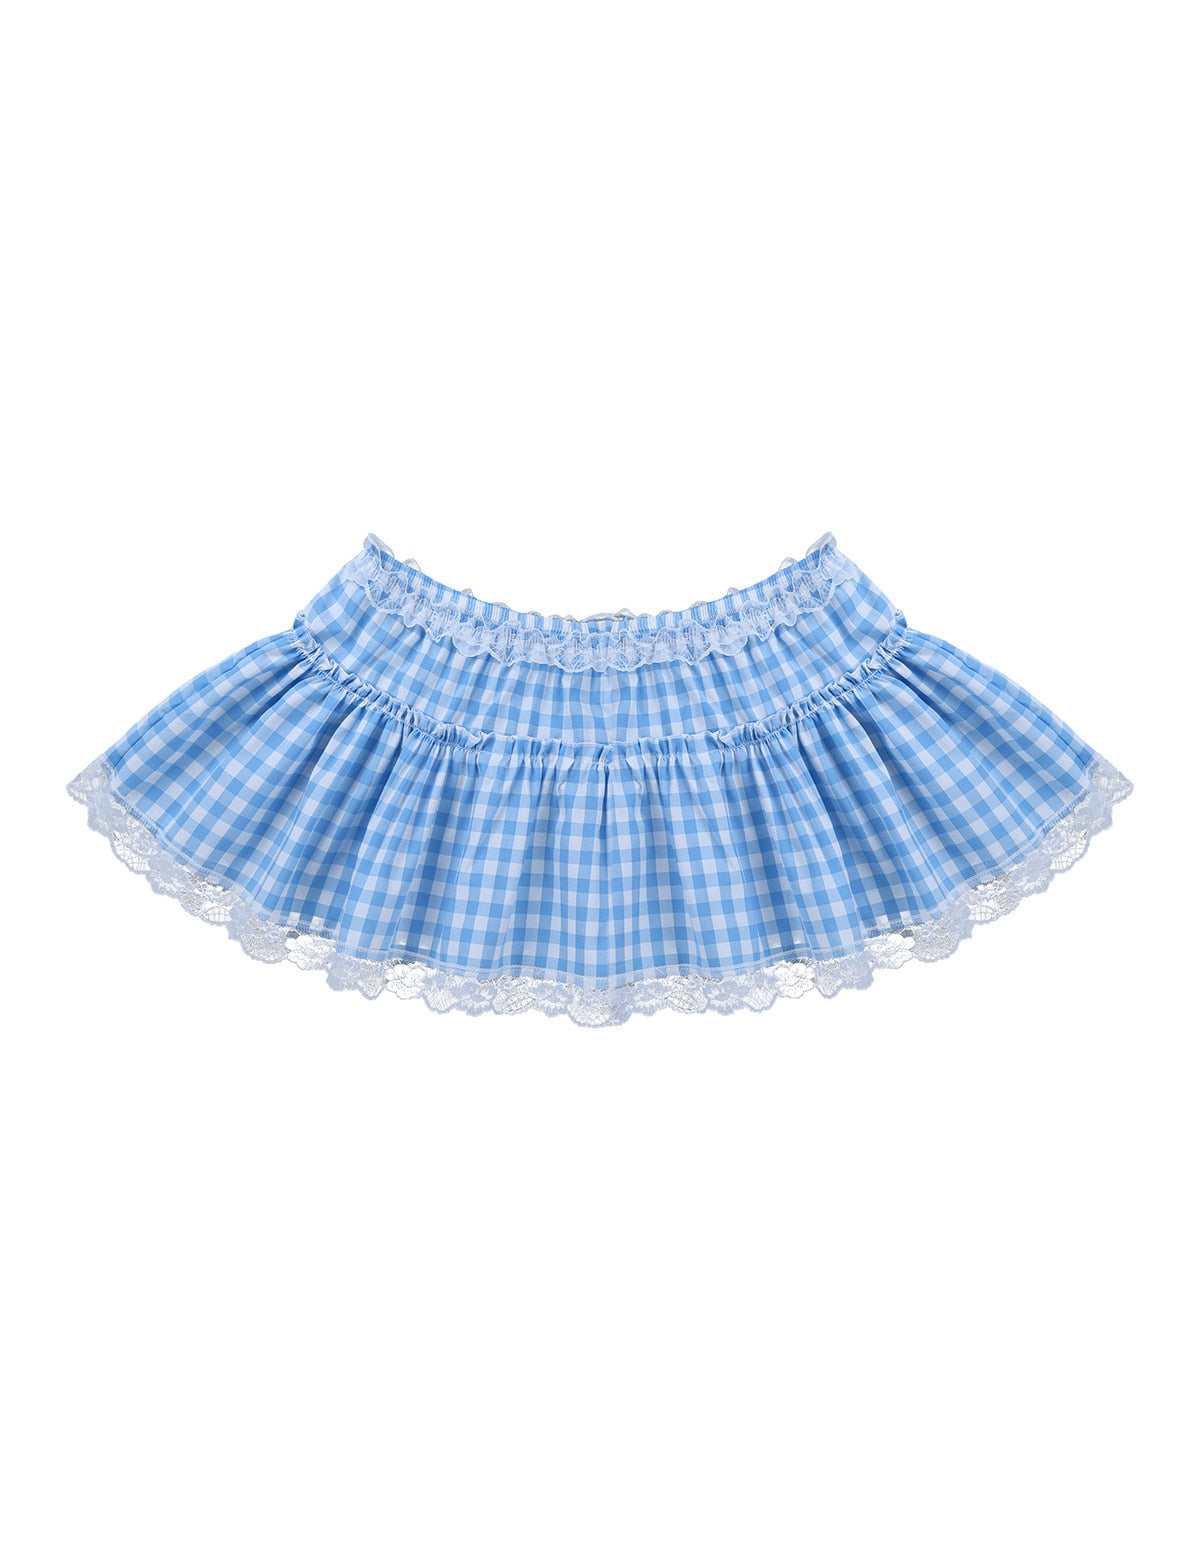 Sissy Skirt: Plaid Ruffled Mini Skirt for Crossdressers